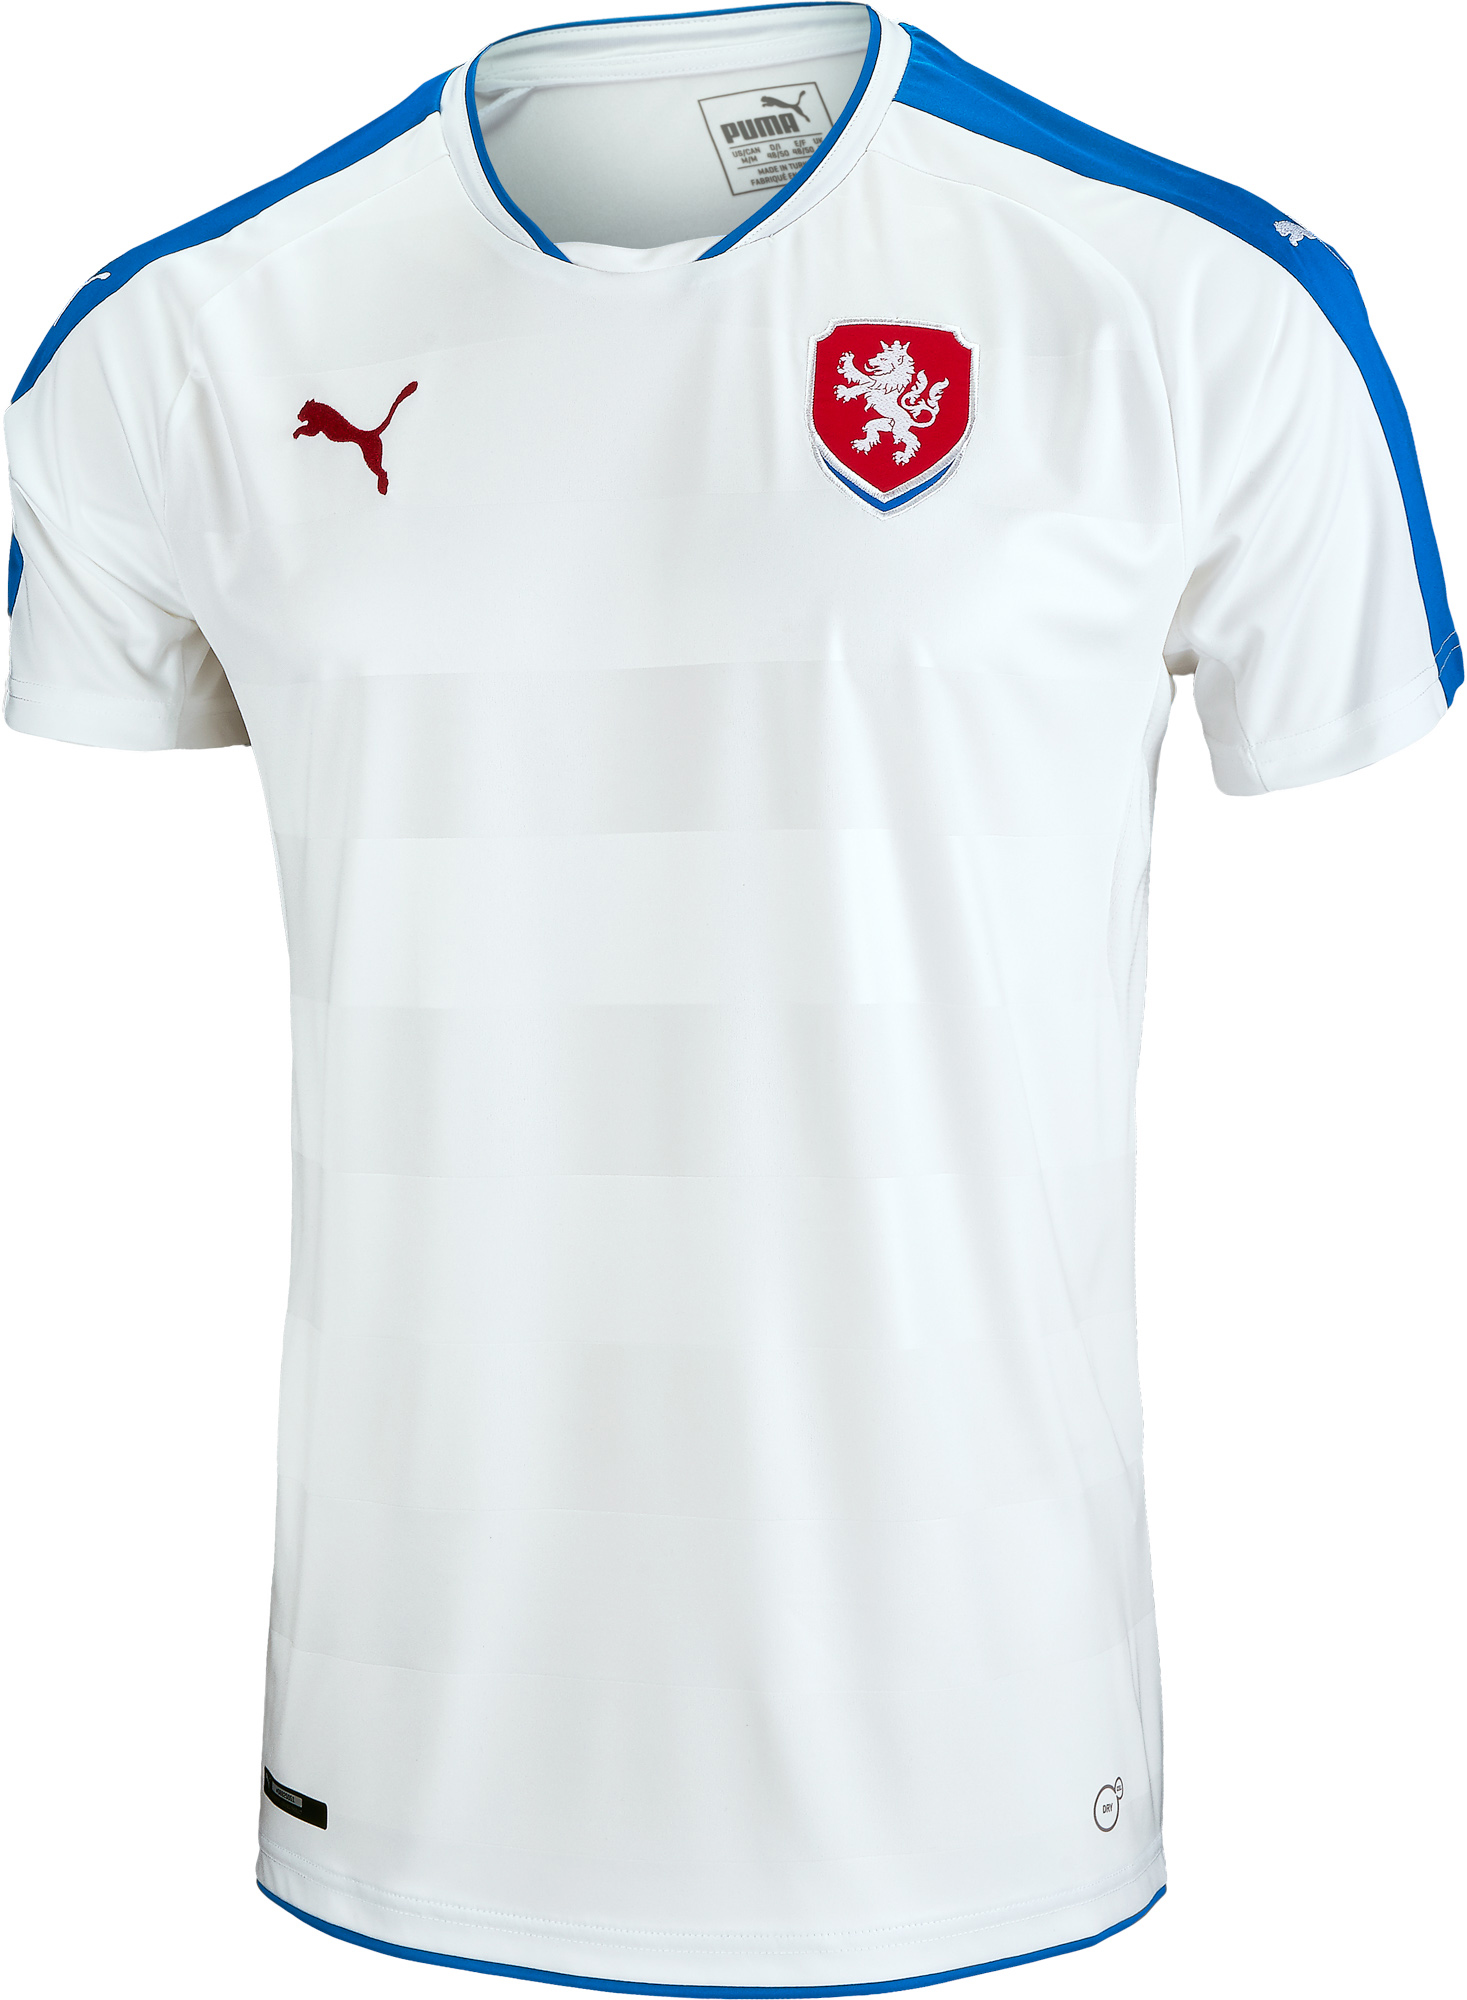 PUMA Czech Republic Away Jersey 2015-16